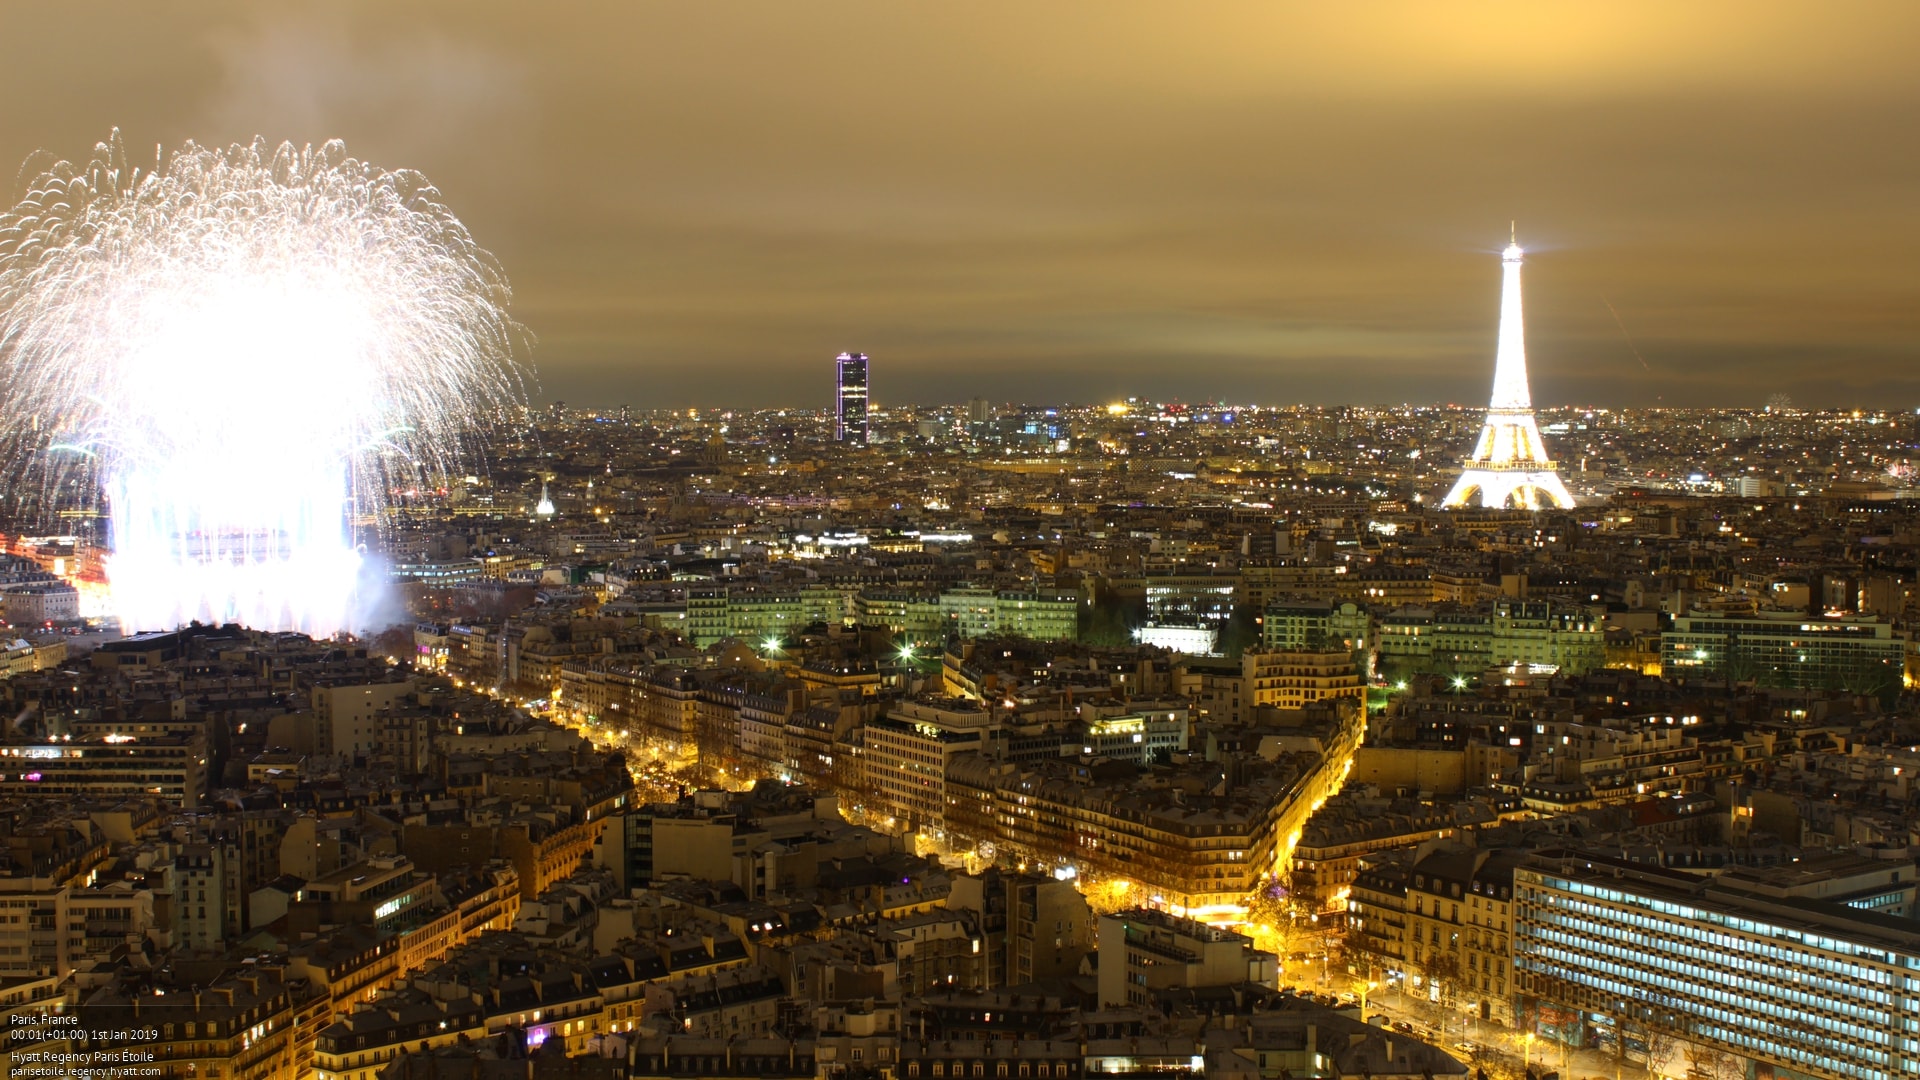 New Year's celebration in Paris Deckchair